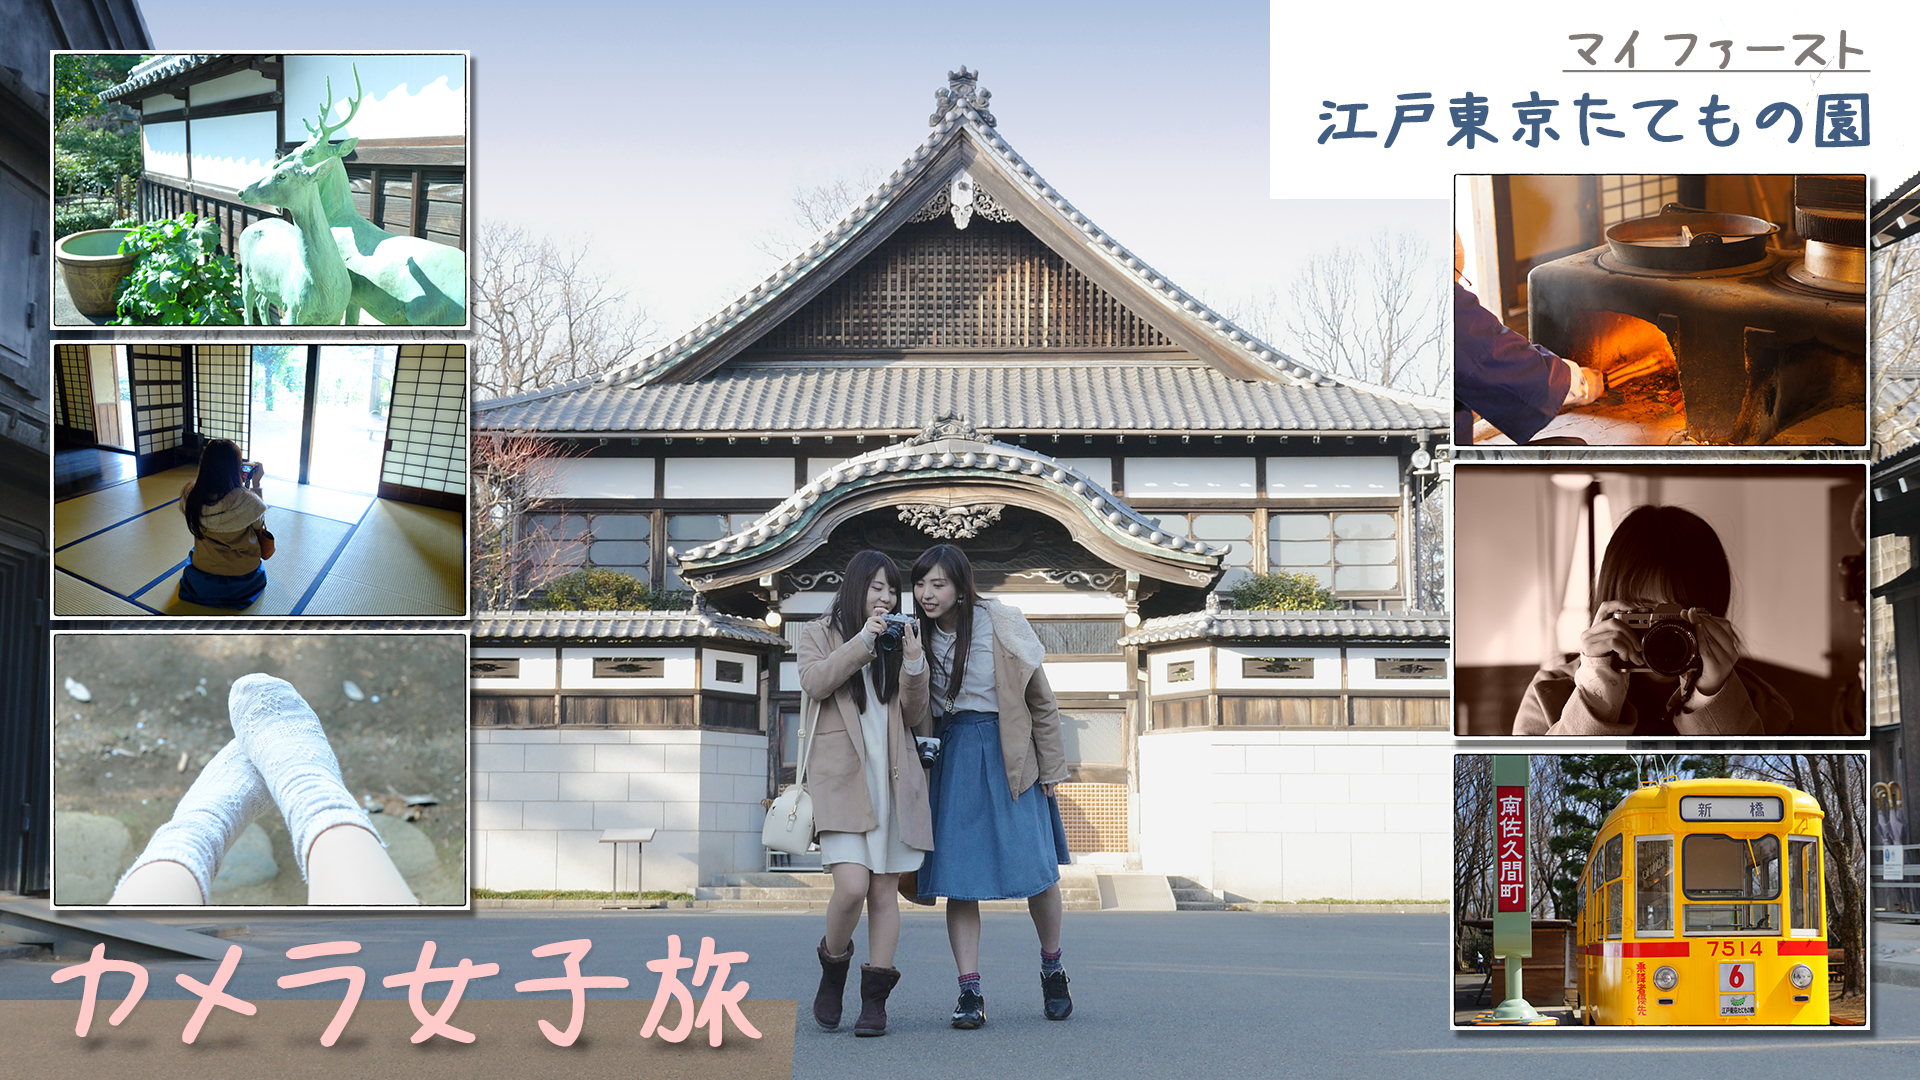 カメラ女子旅 – マイ ファースト 江戸東京たてもの園 サムネイル